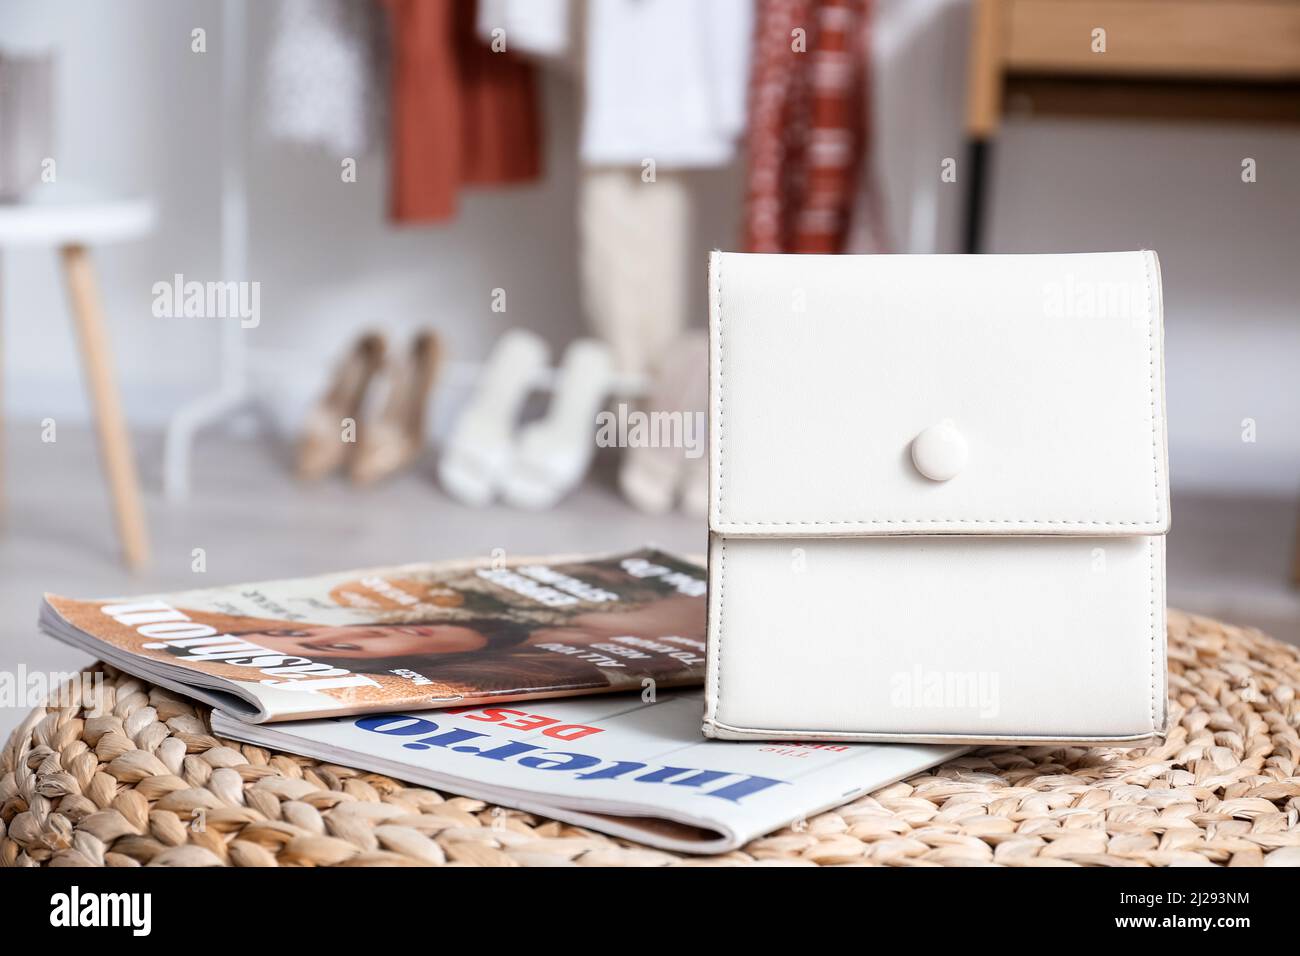 Borsa elegante e riviste di moda sul pouf in camera Foto Stock